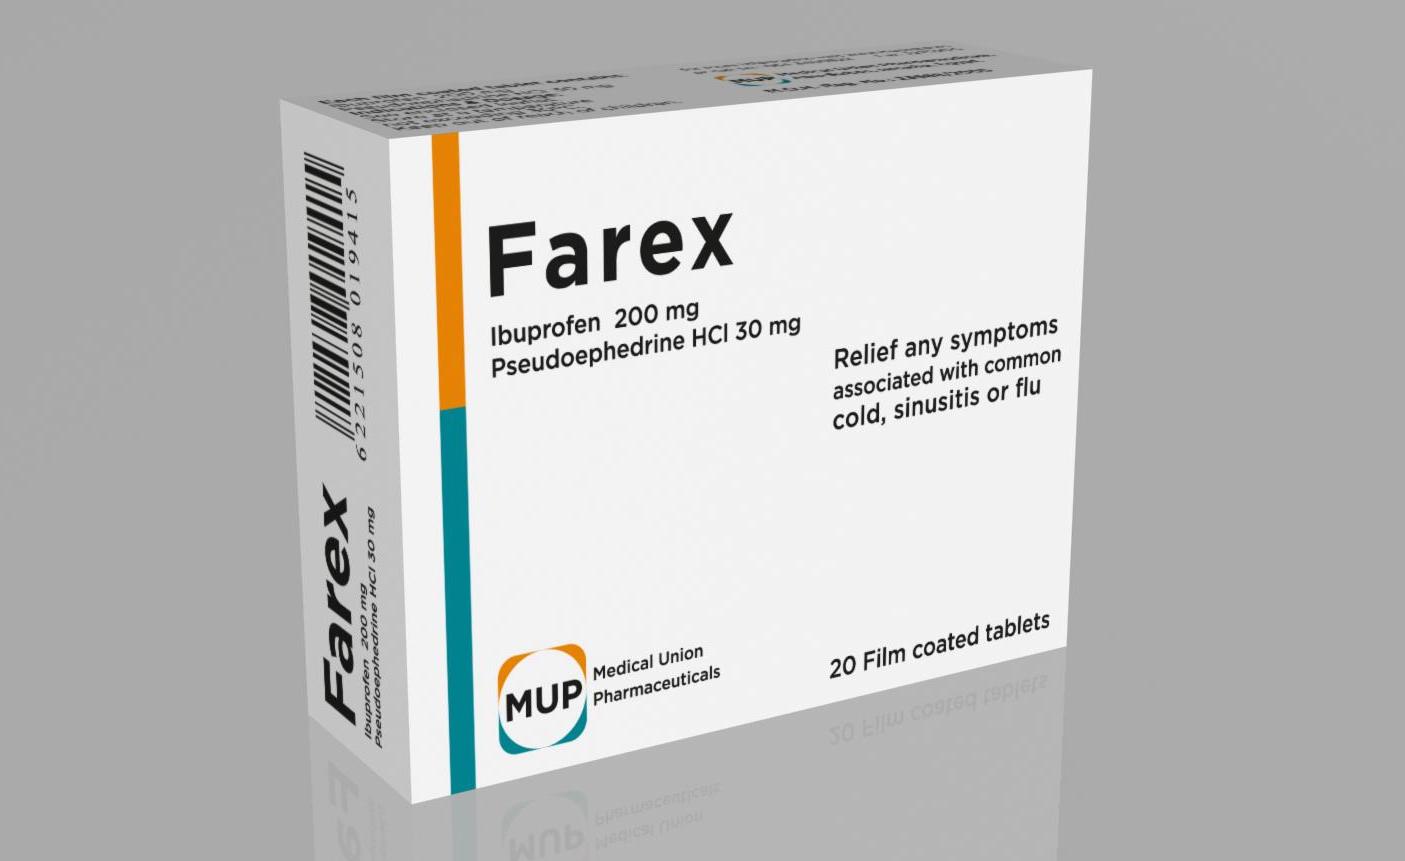 اقراص فاريكس لعلاج اعراض البرد و الإنفلوانزا مثل الرشح و العطس FAREX